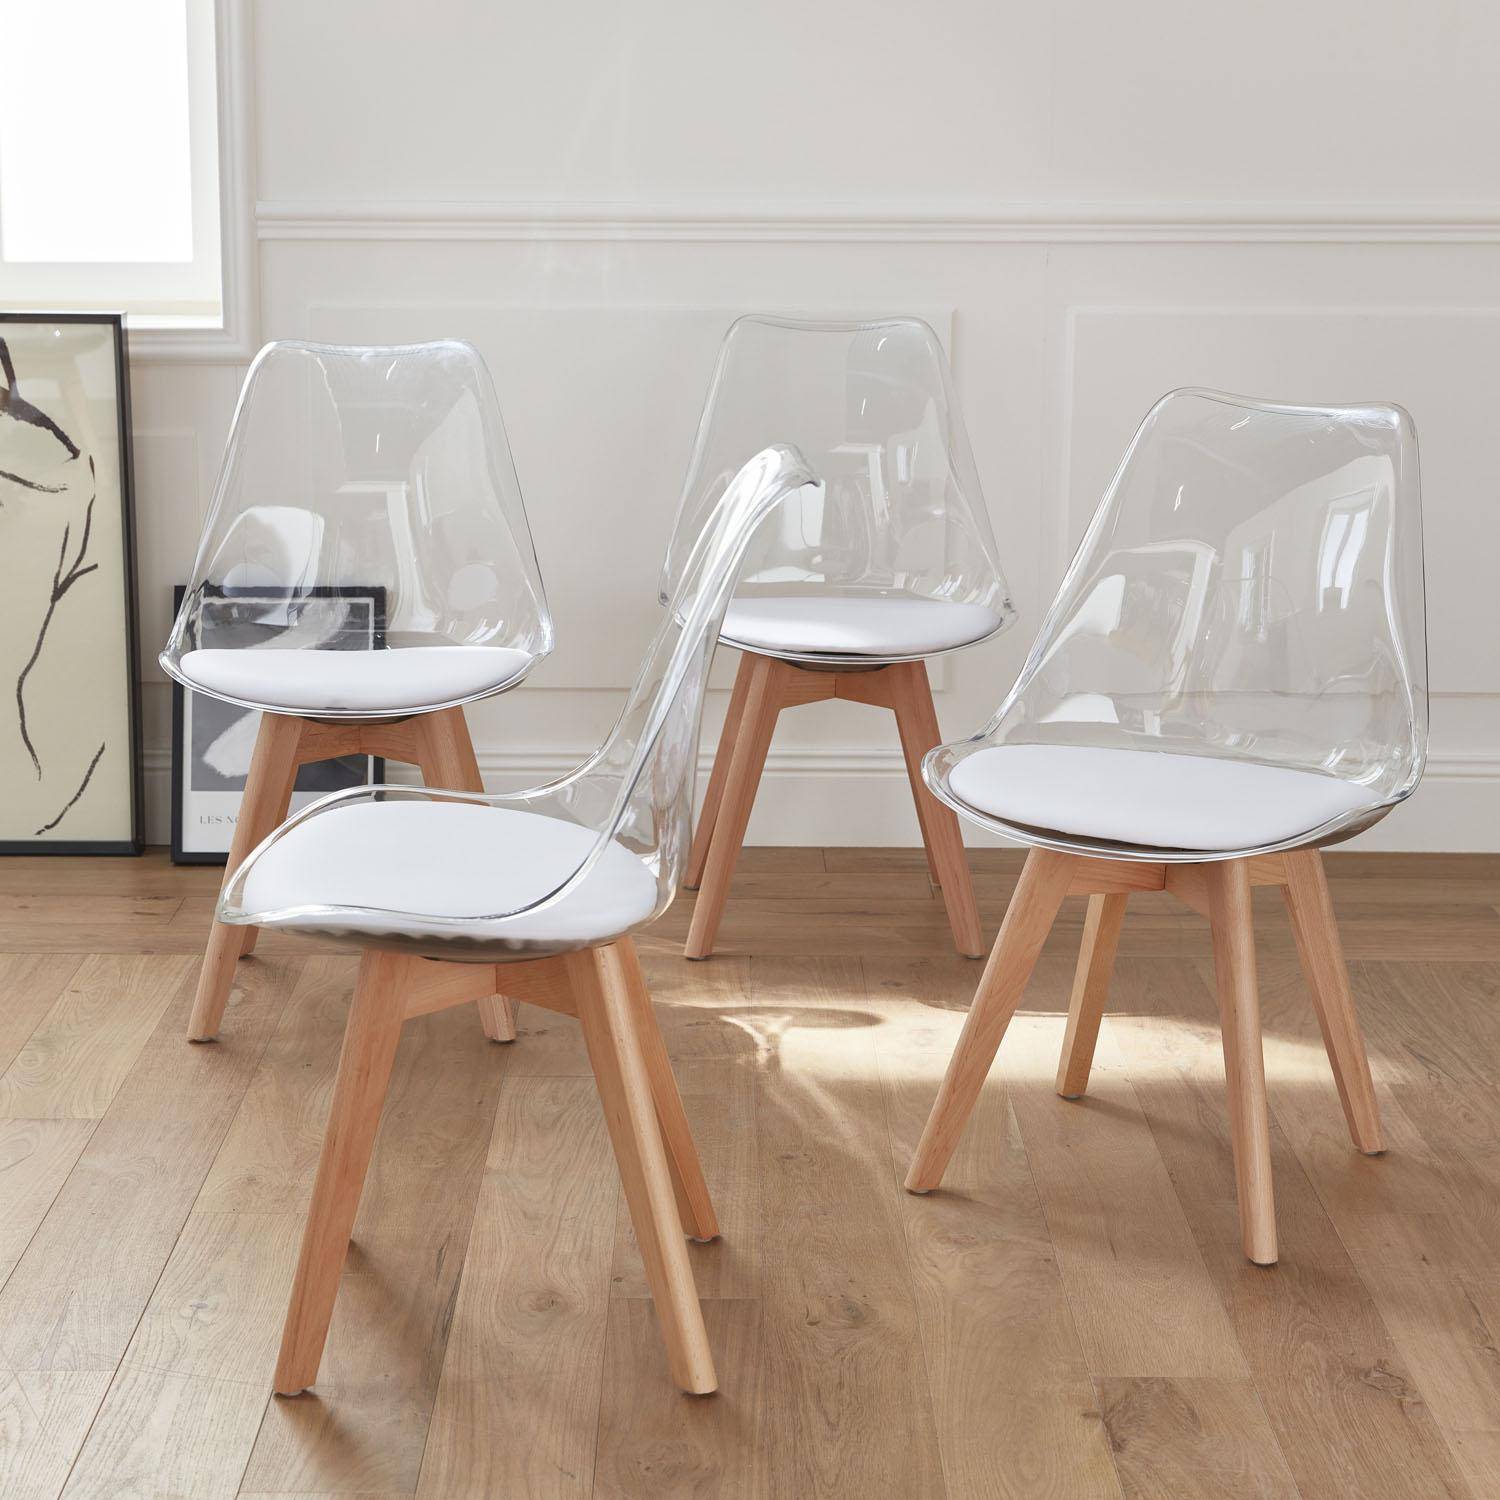 Juego de 4 sillas escandinavas - Lagertha - patas de madera, asientos individuales, cojín blanco, carcasa transparente ,sweeek,Photo1